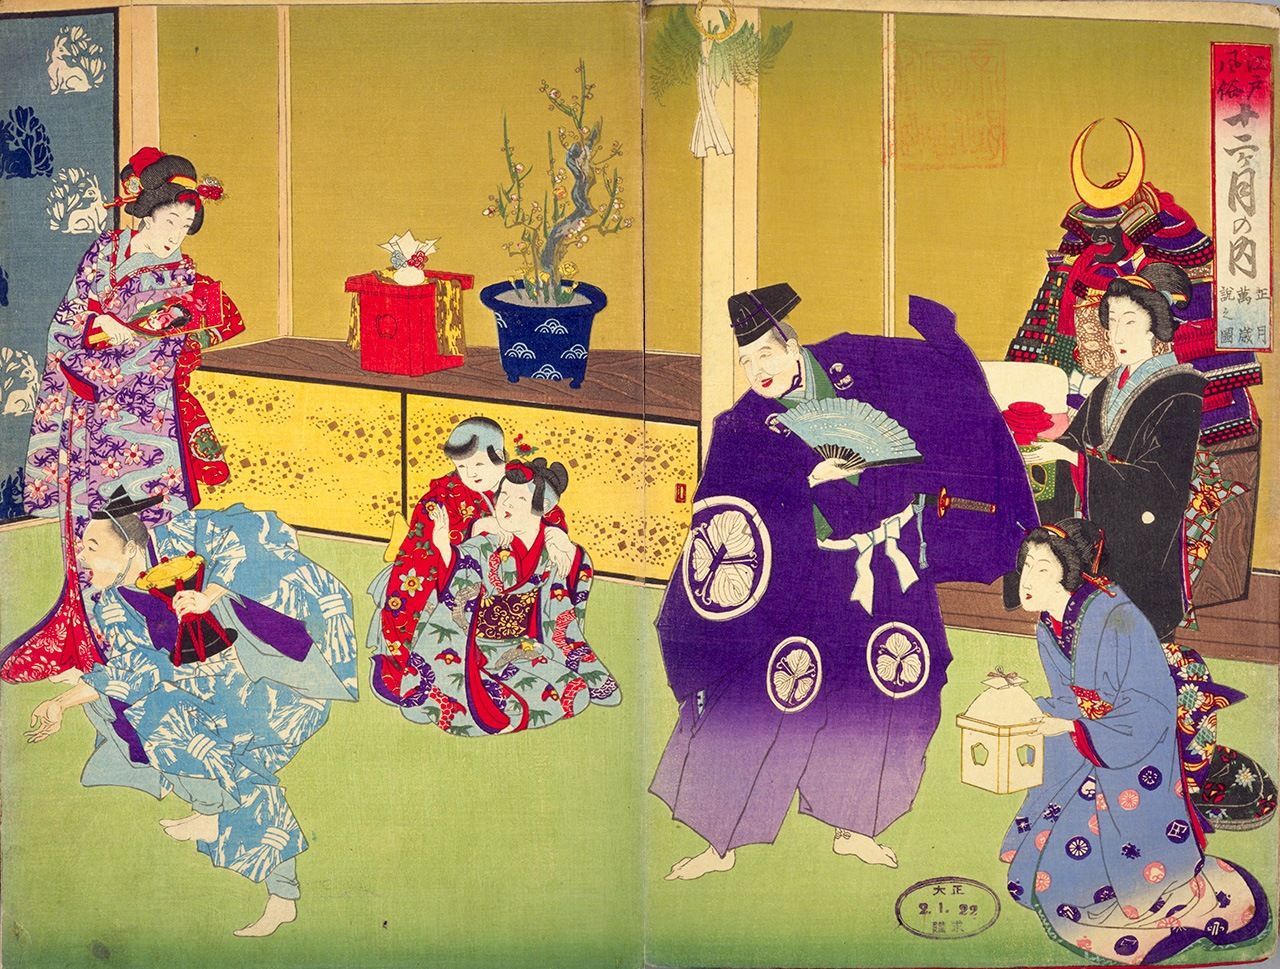 Costumbres de Edo en los doce meses del año: actuación de manzai en Año Nuevo, propiedad de la Biblioteca Nacional de la Dieta. A juzgar por la vestimenta de las mujeres y el niño, se cree que esta obra muestra una función de un dúo de manzai de Mikawa en la residencia de un samurái. El tayū aparece a la derecha; el saizō, a la izquierda.